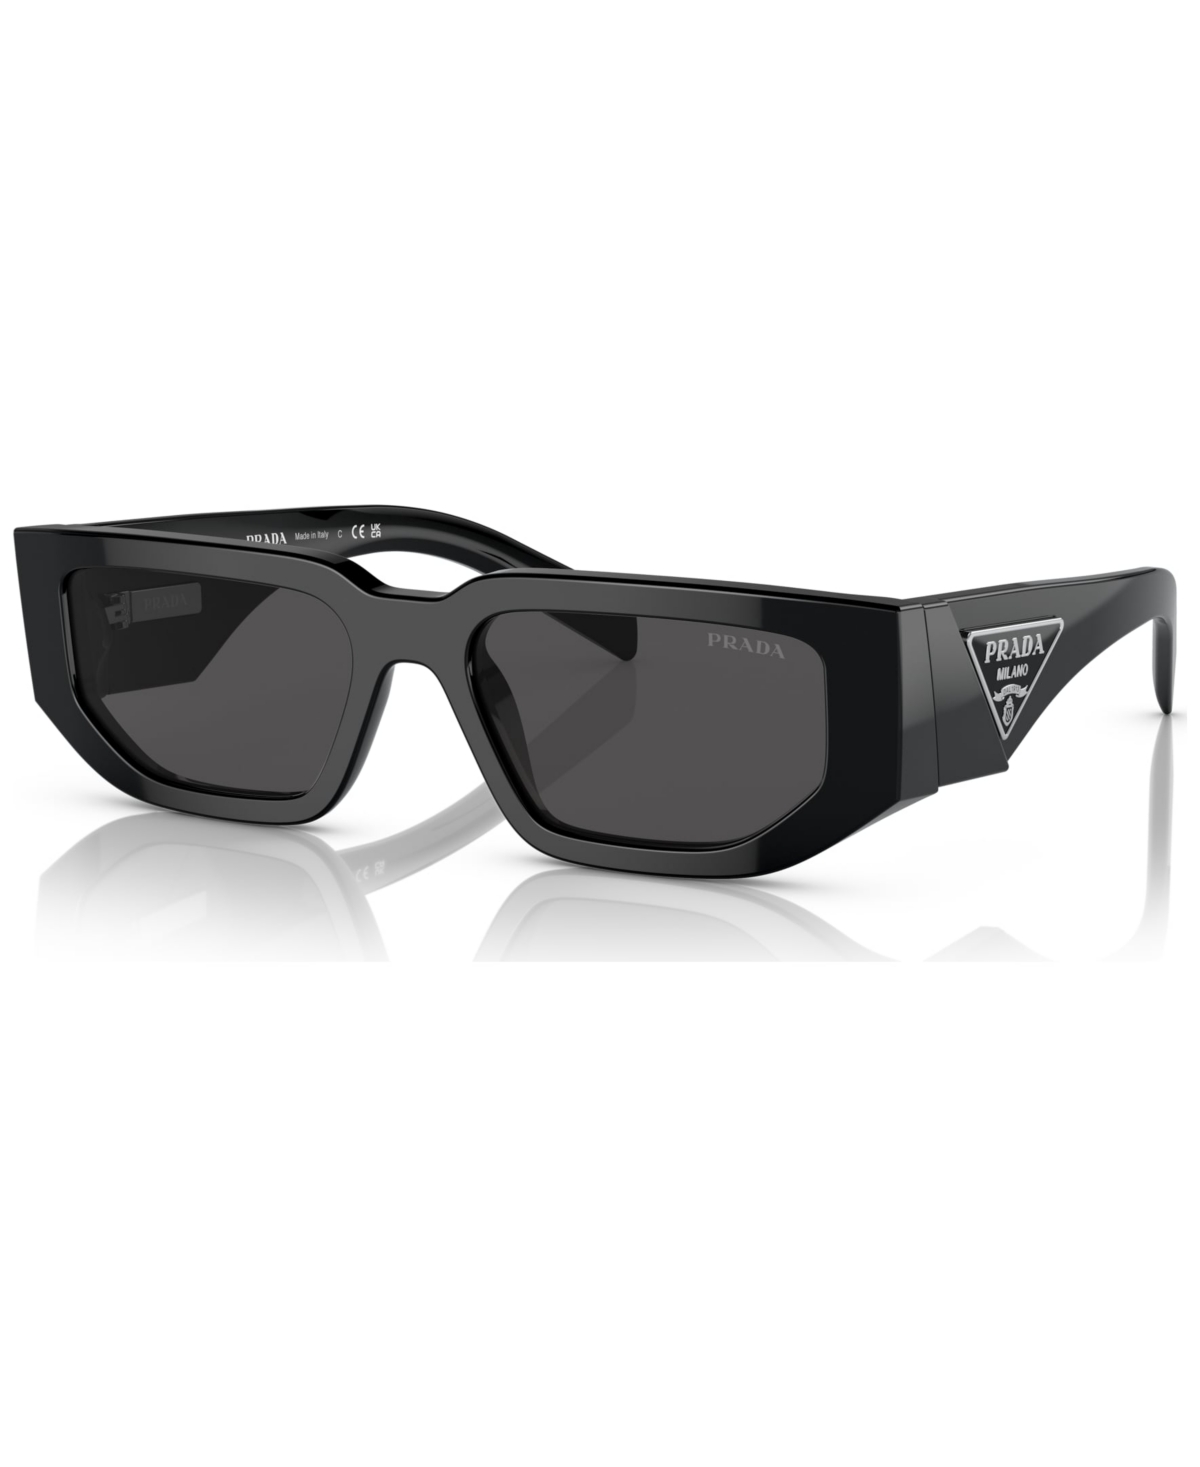 Prada Men's Sunglasses, Pr 09zs In Black